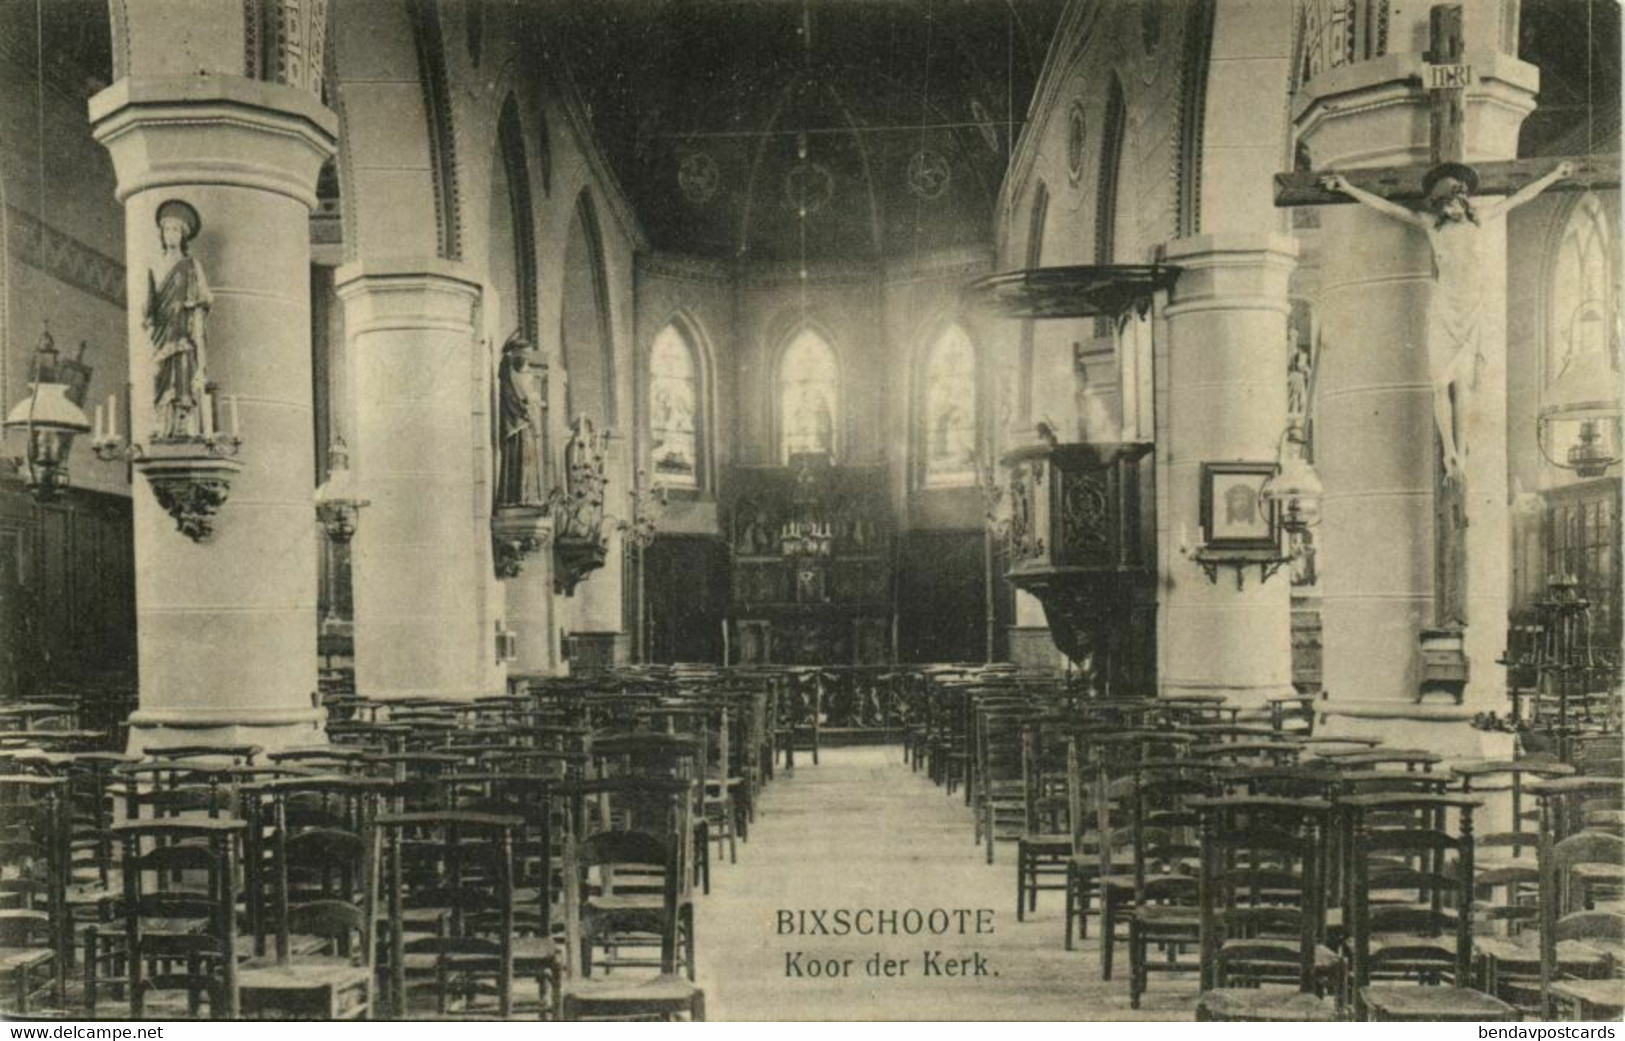 Belgium, BIXSCHOOTE, Koor Der Kerk, Church (1910s) Postcard - Langemark-Poelkapelle